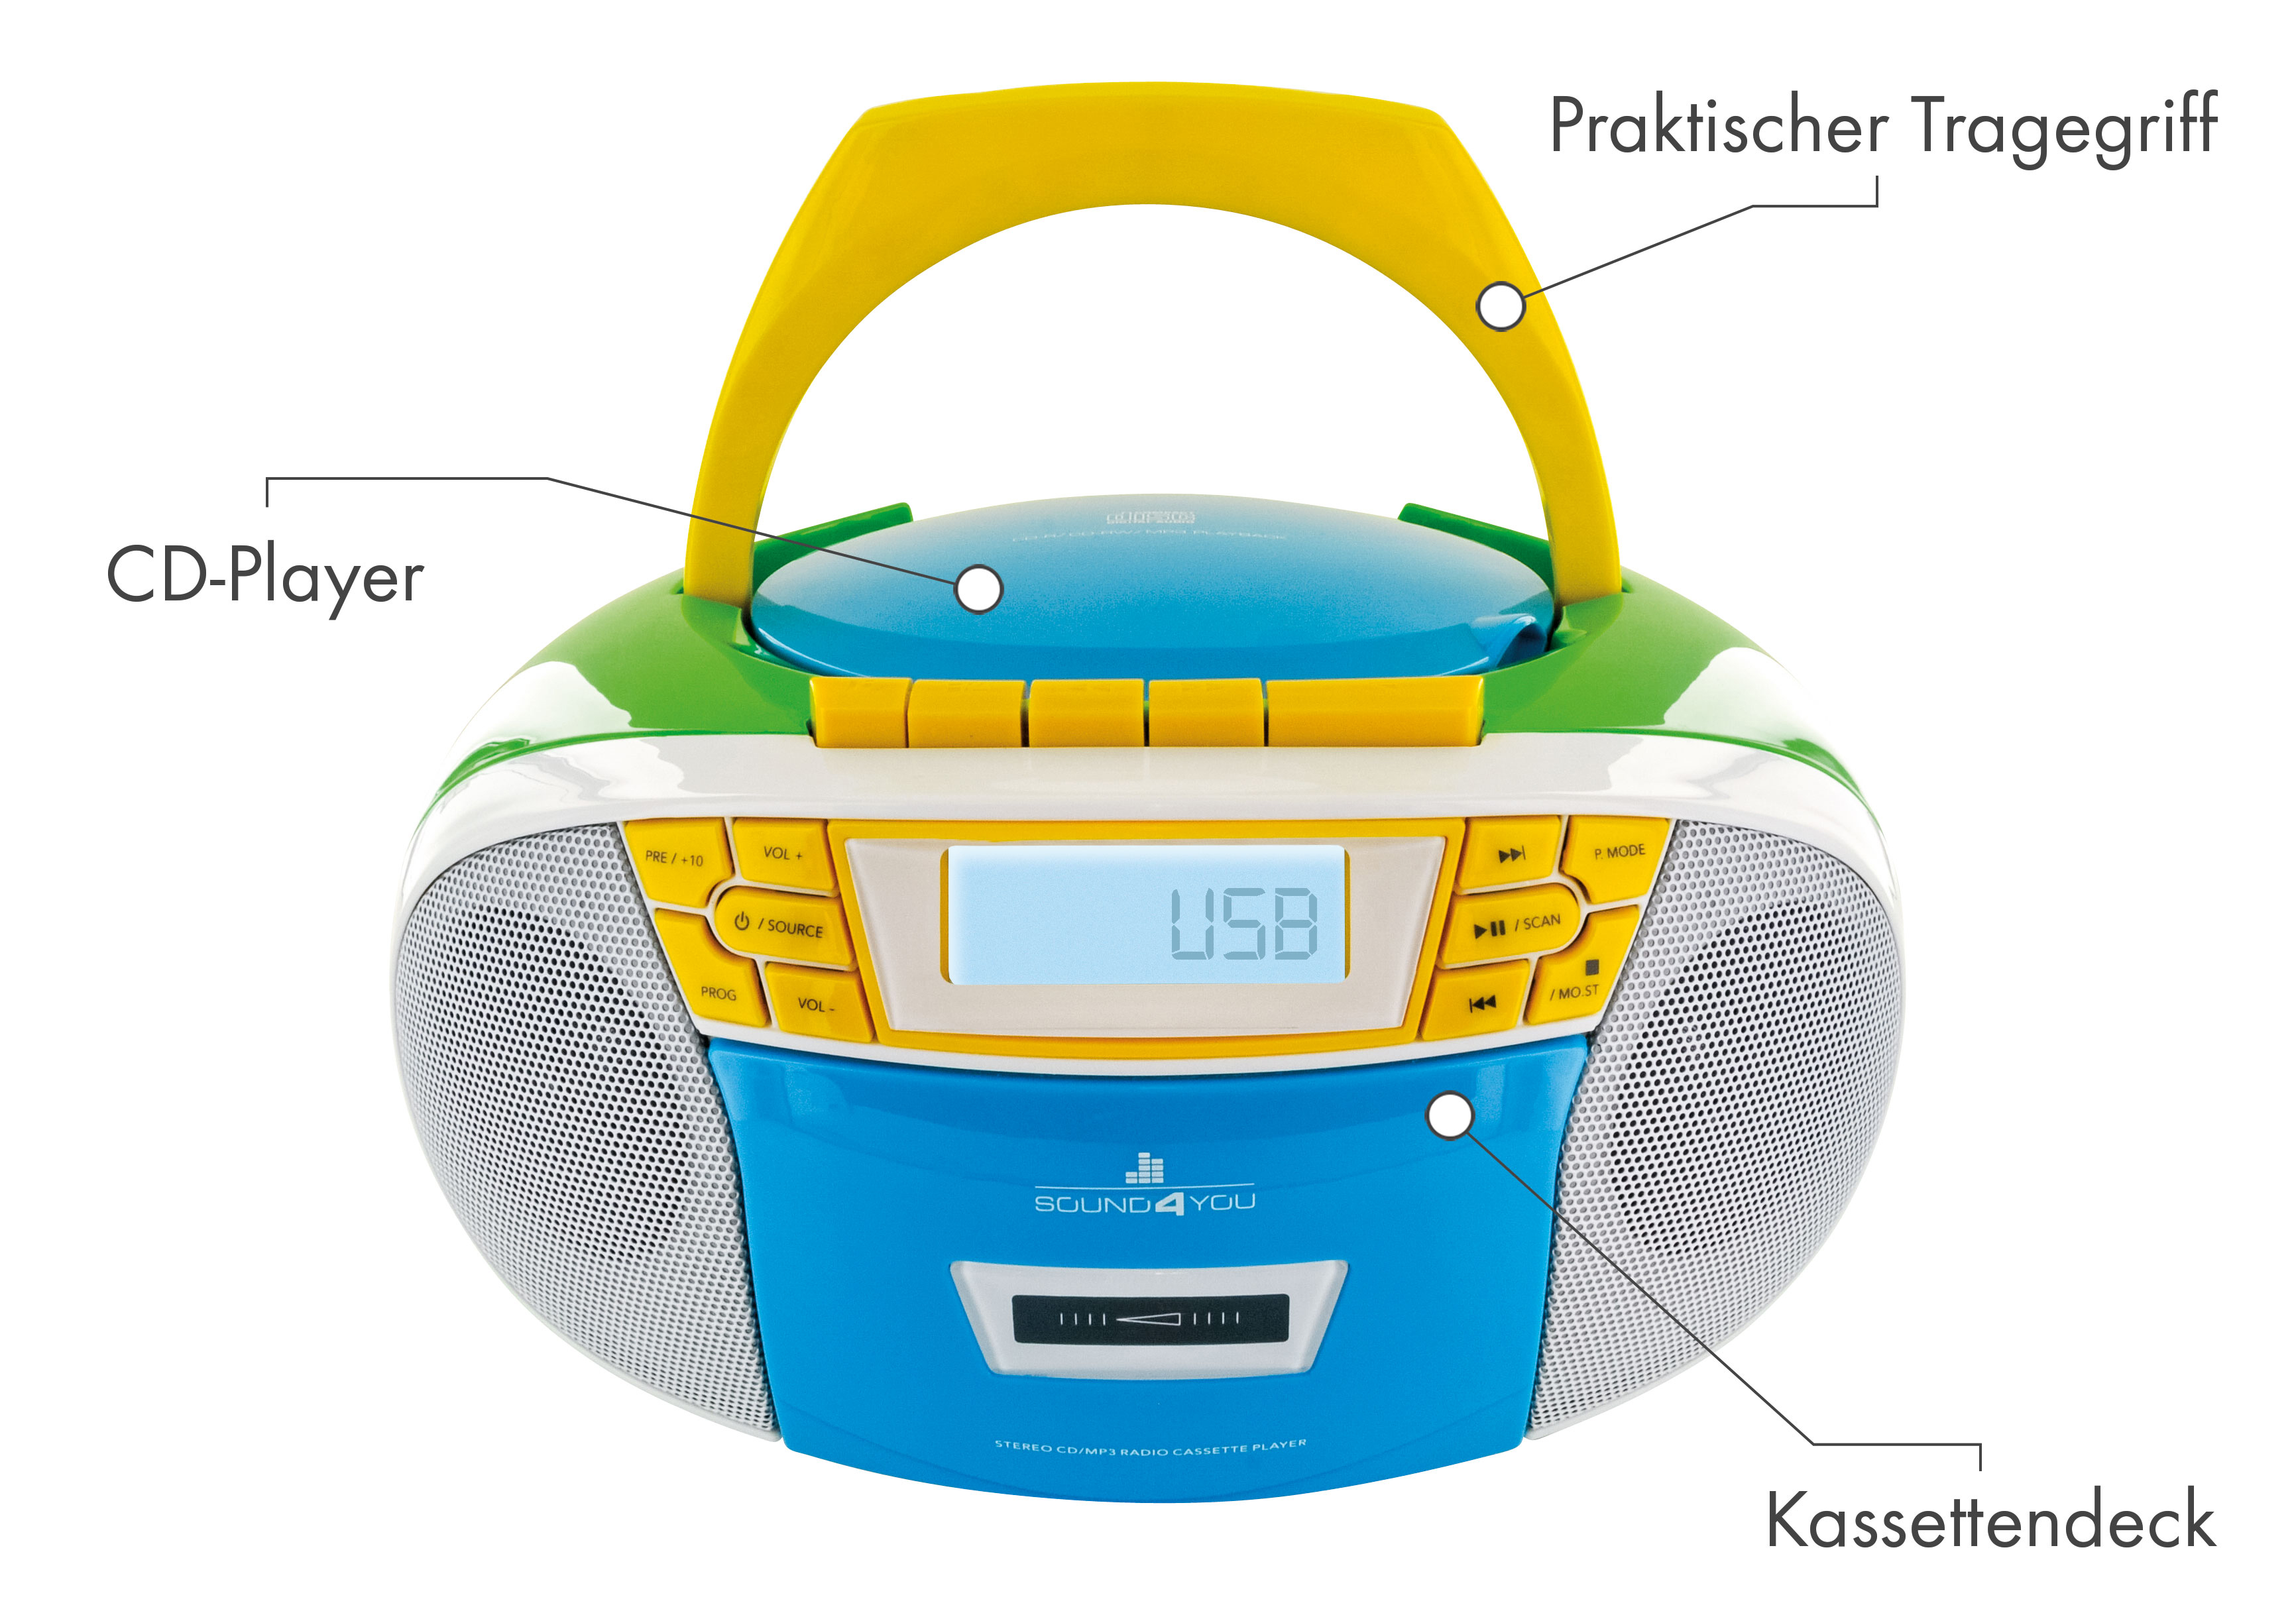 SCHWAIGER -661644- Tragbarer CD-Player mit Kassettendeck FM (Blau/Gelb/Grün/Weiß) und Radio, Bunt